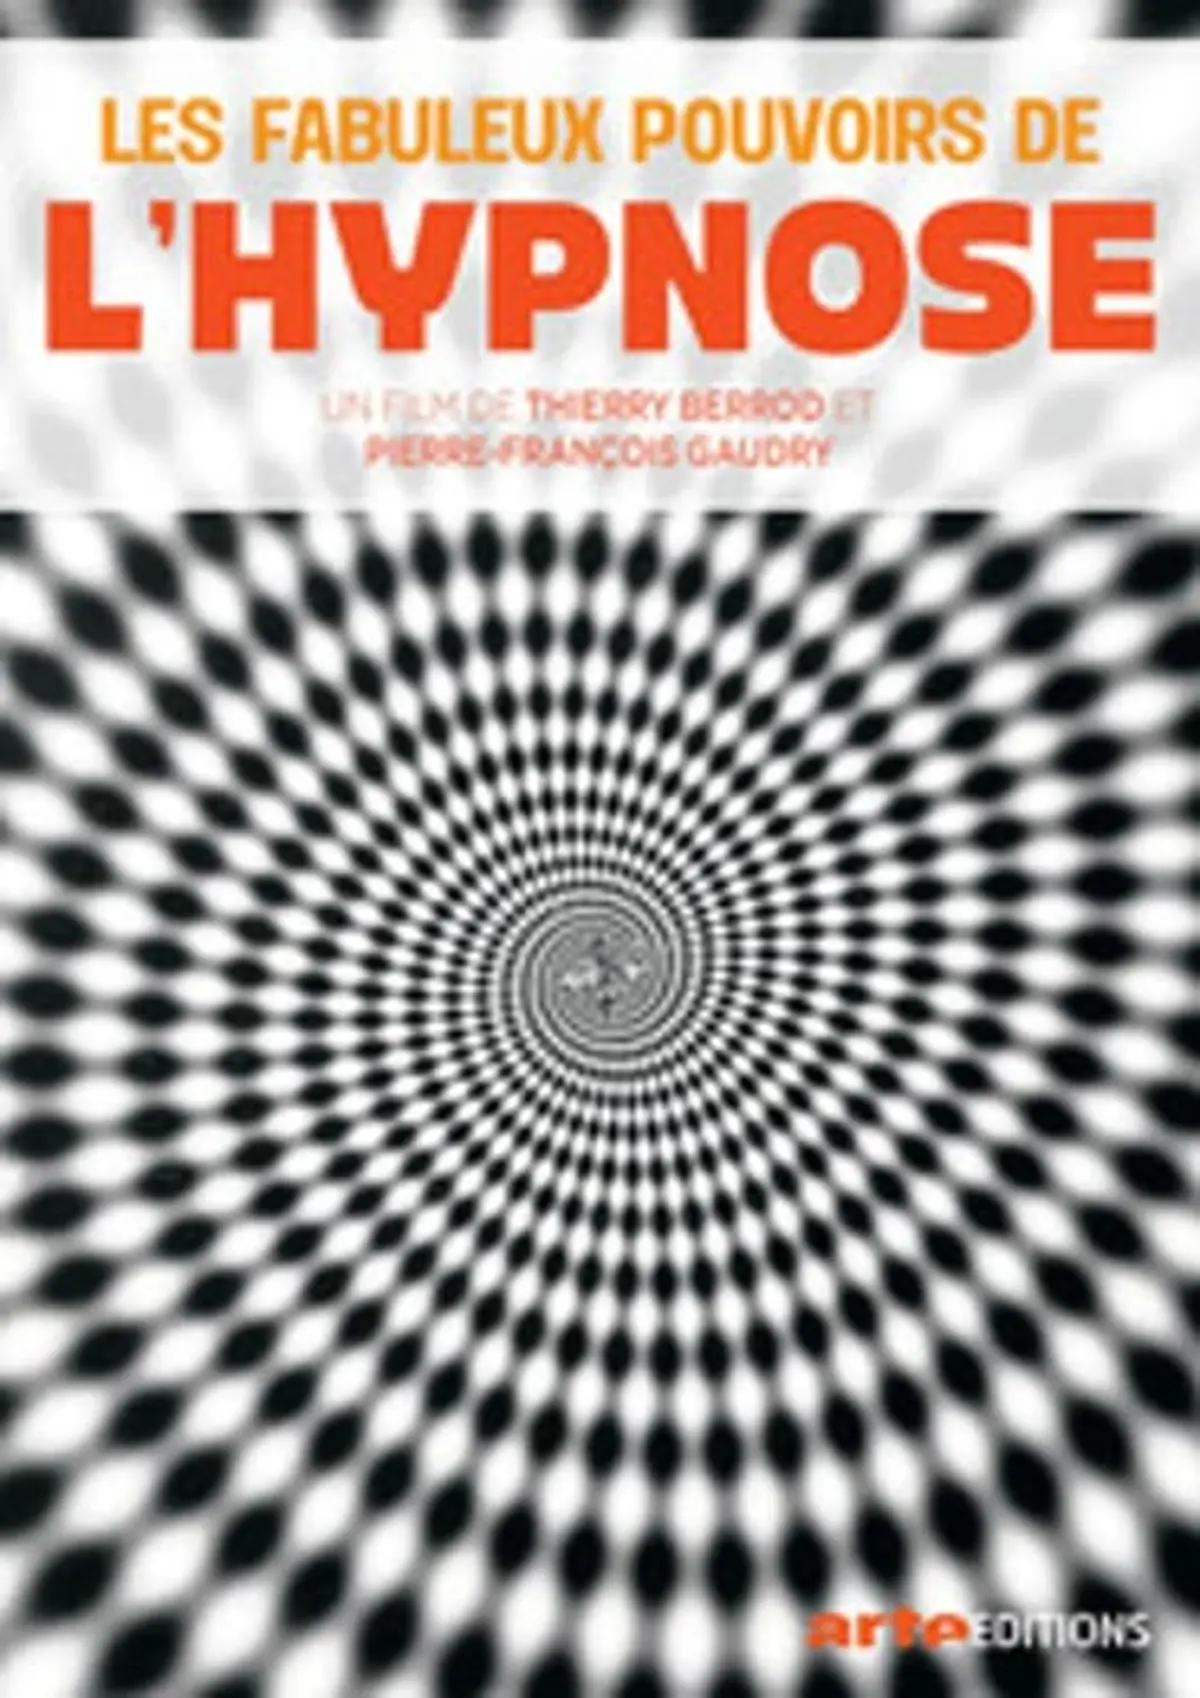 Les Fabuleux Pouvoirs de l'hypnose